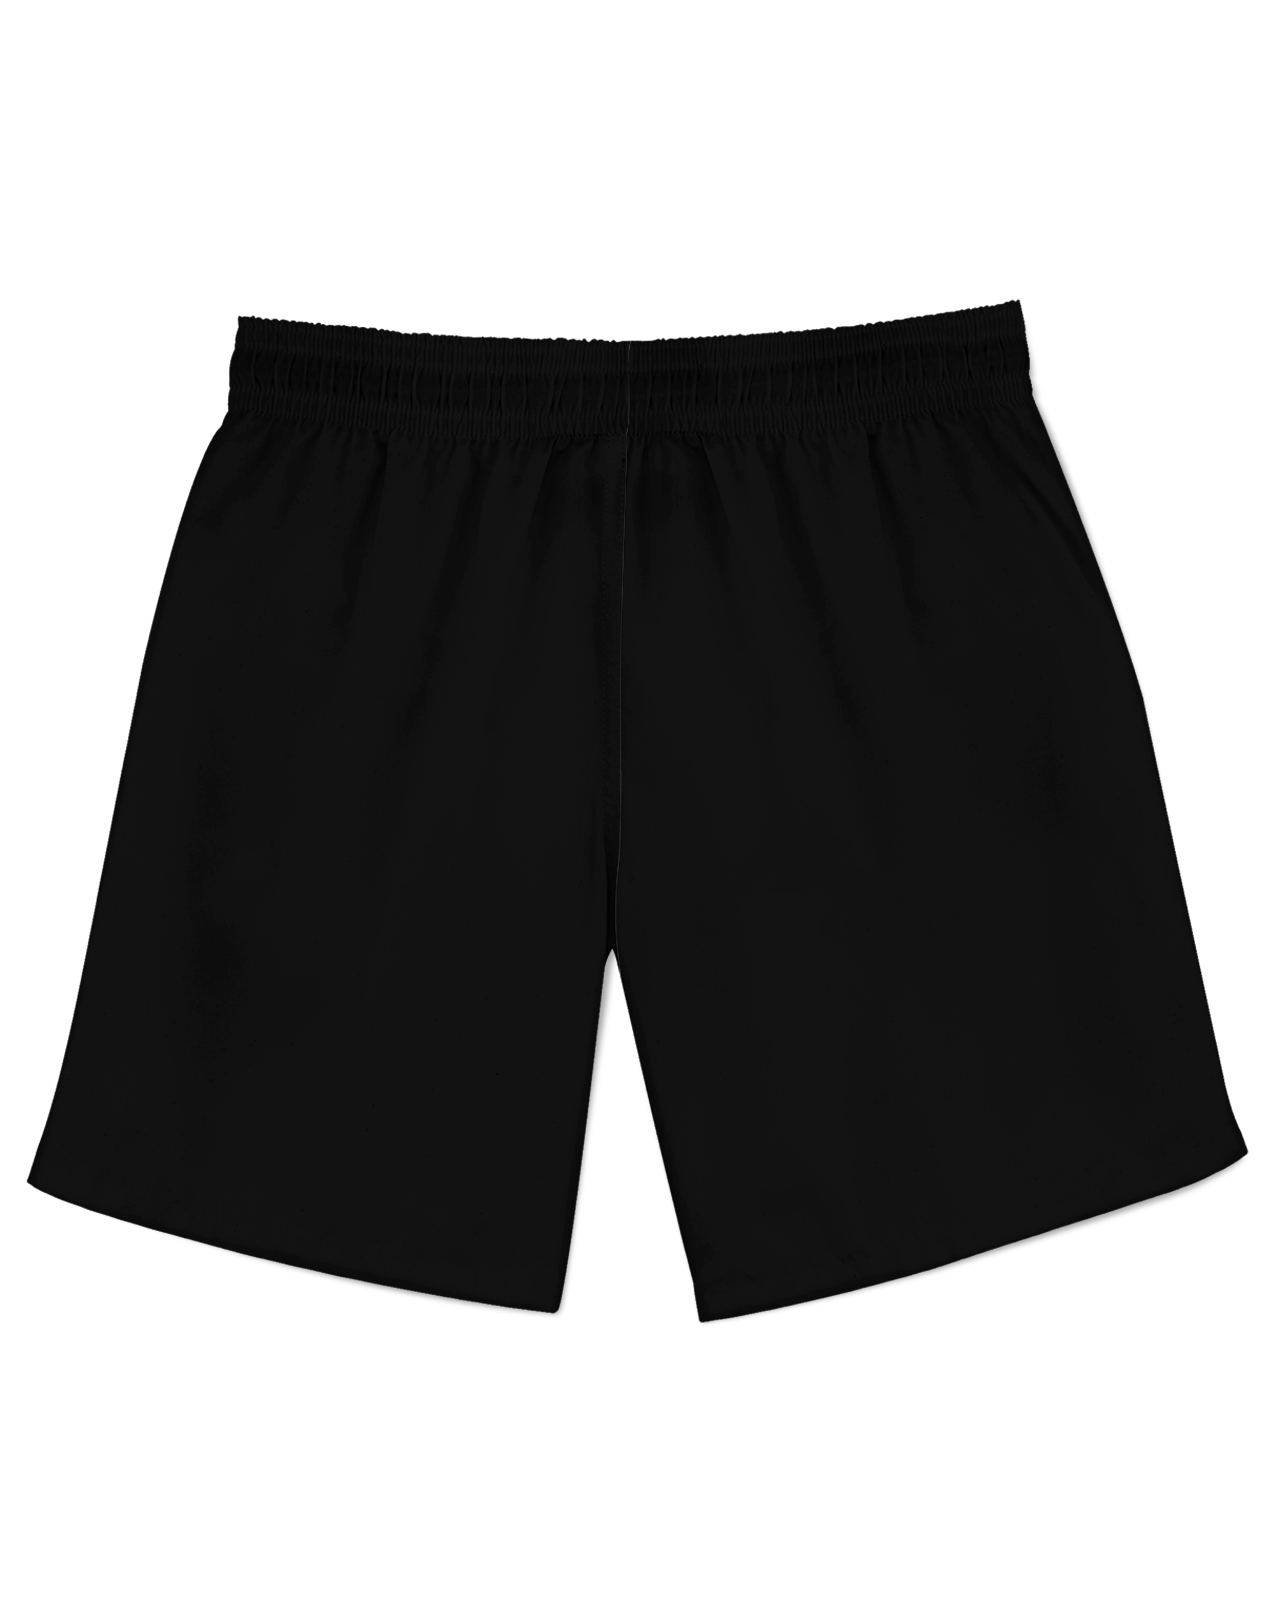 805 1 Athletic Shorts